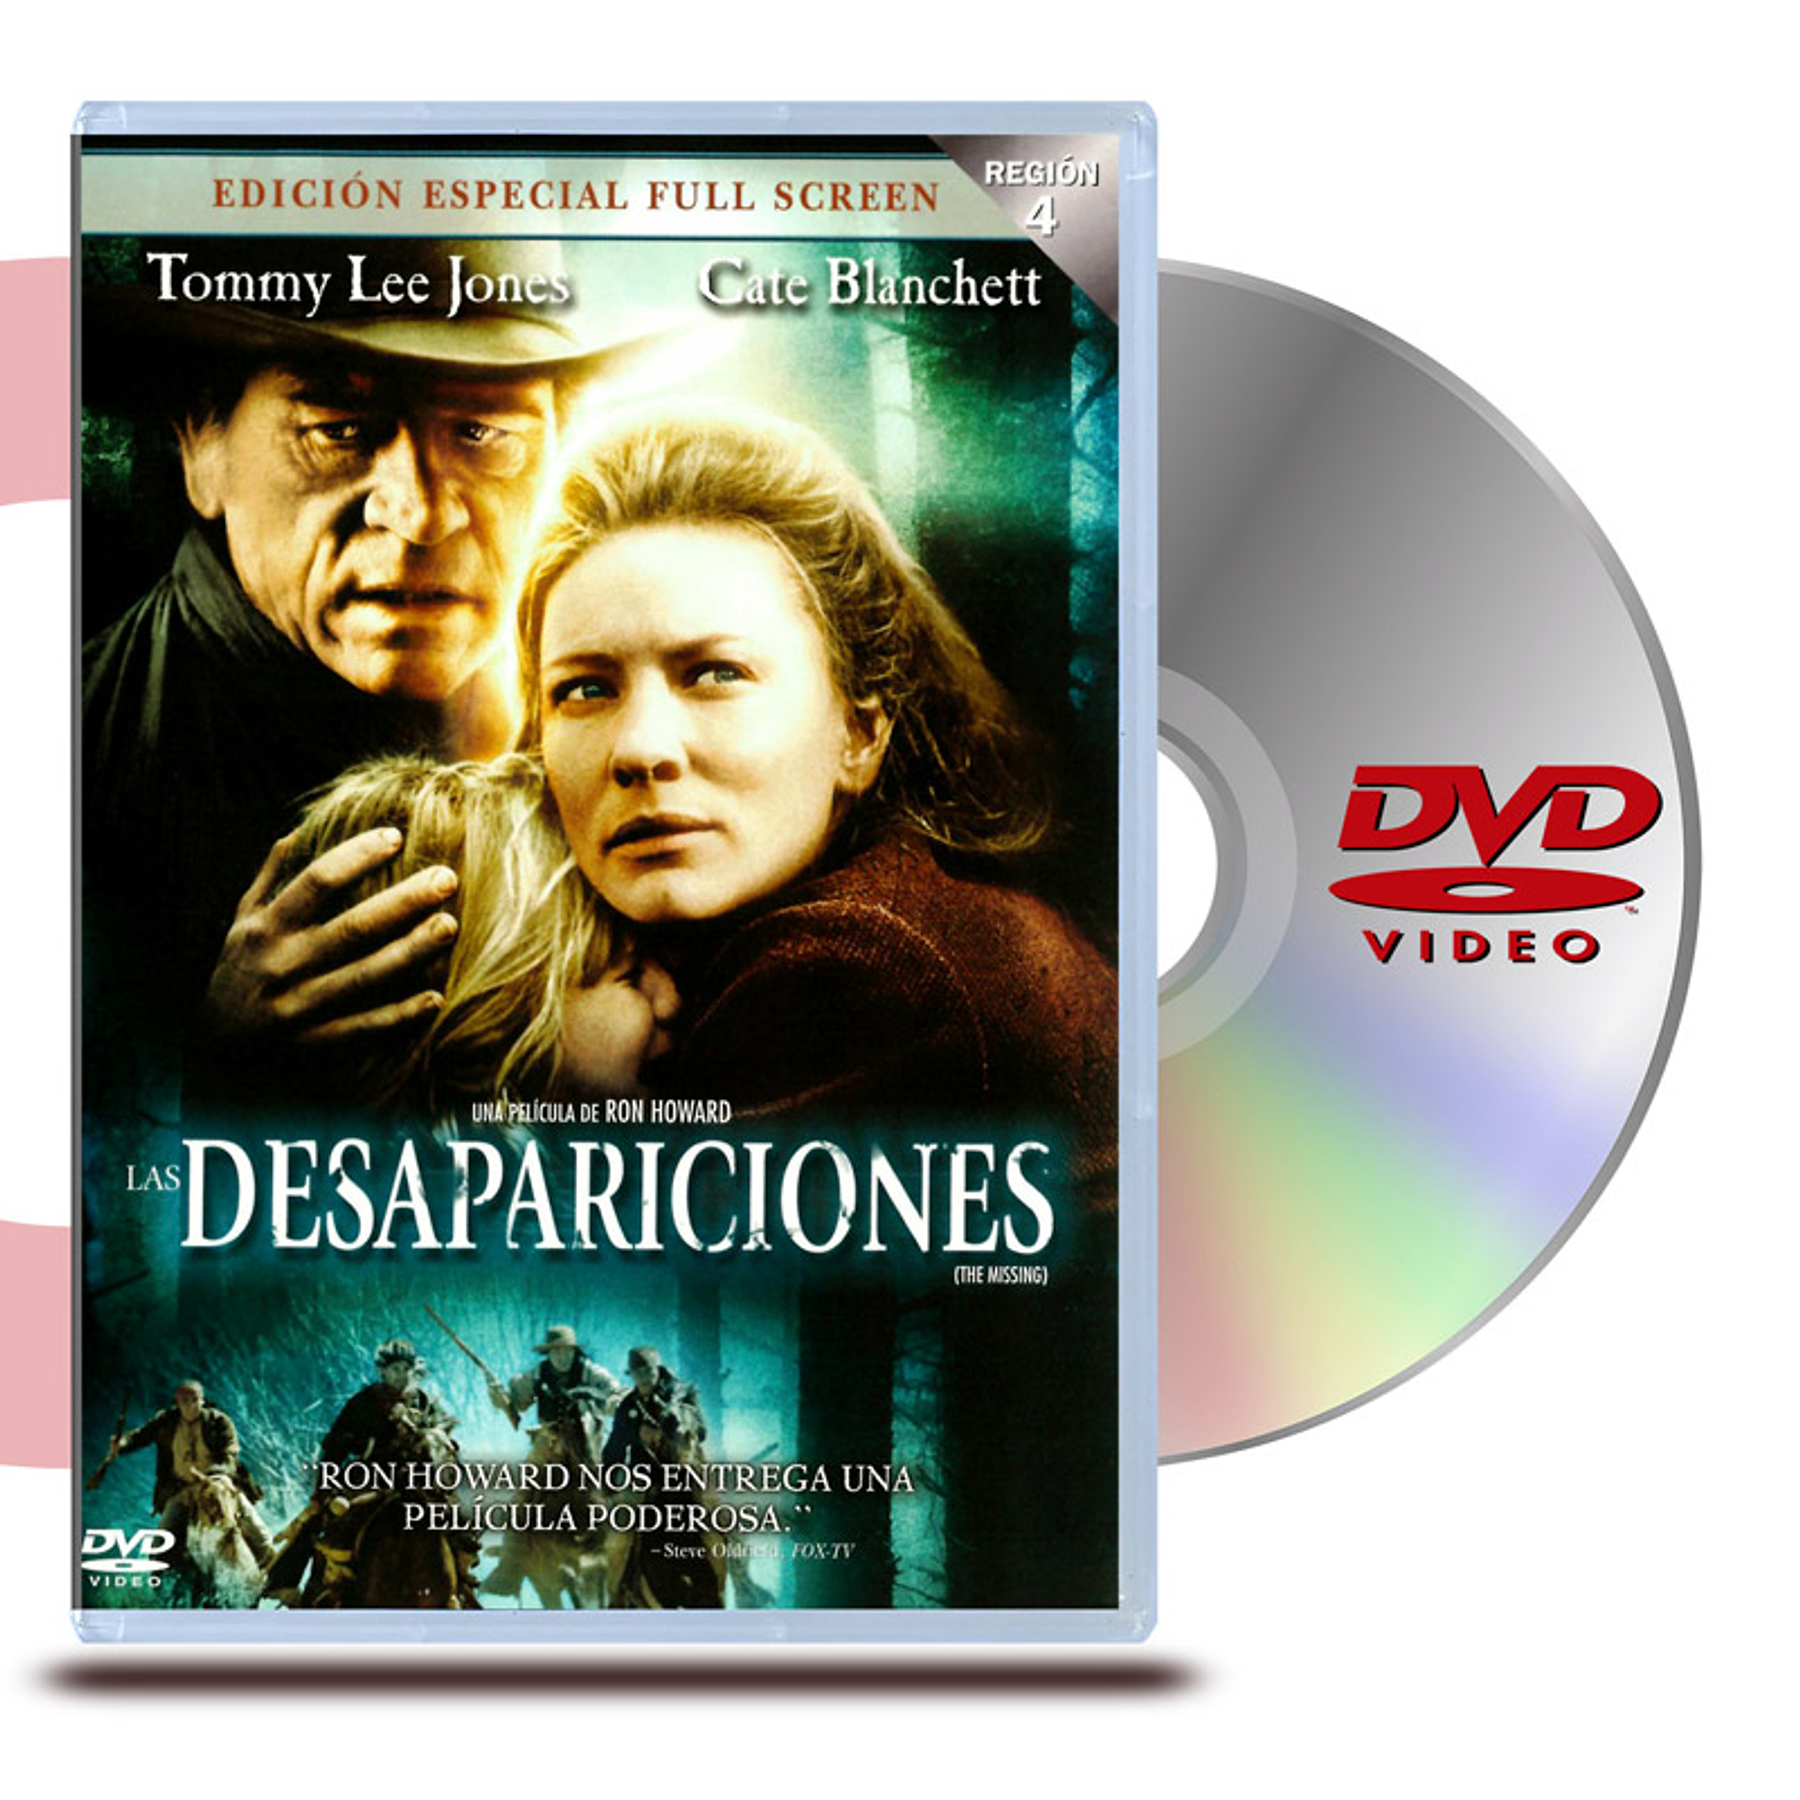 DVD DESAPARACIONES